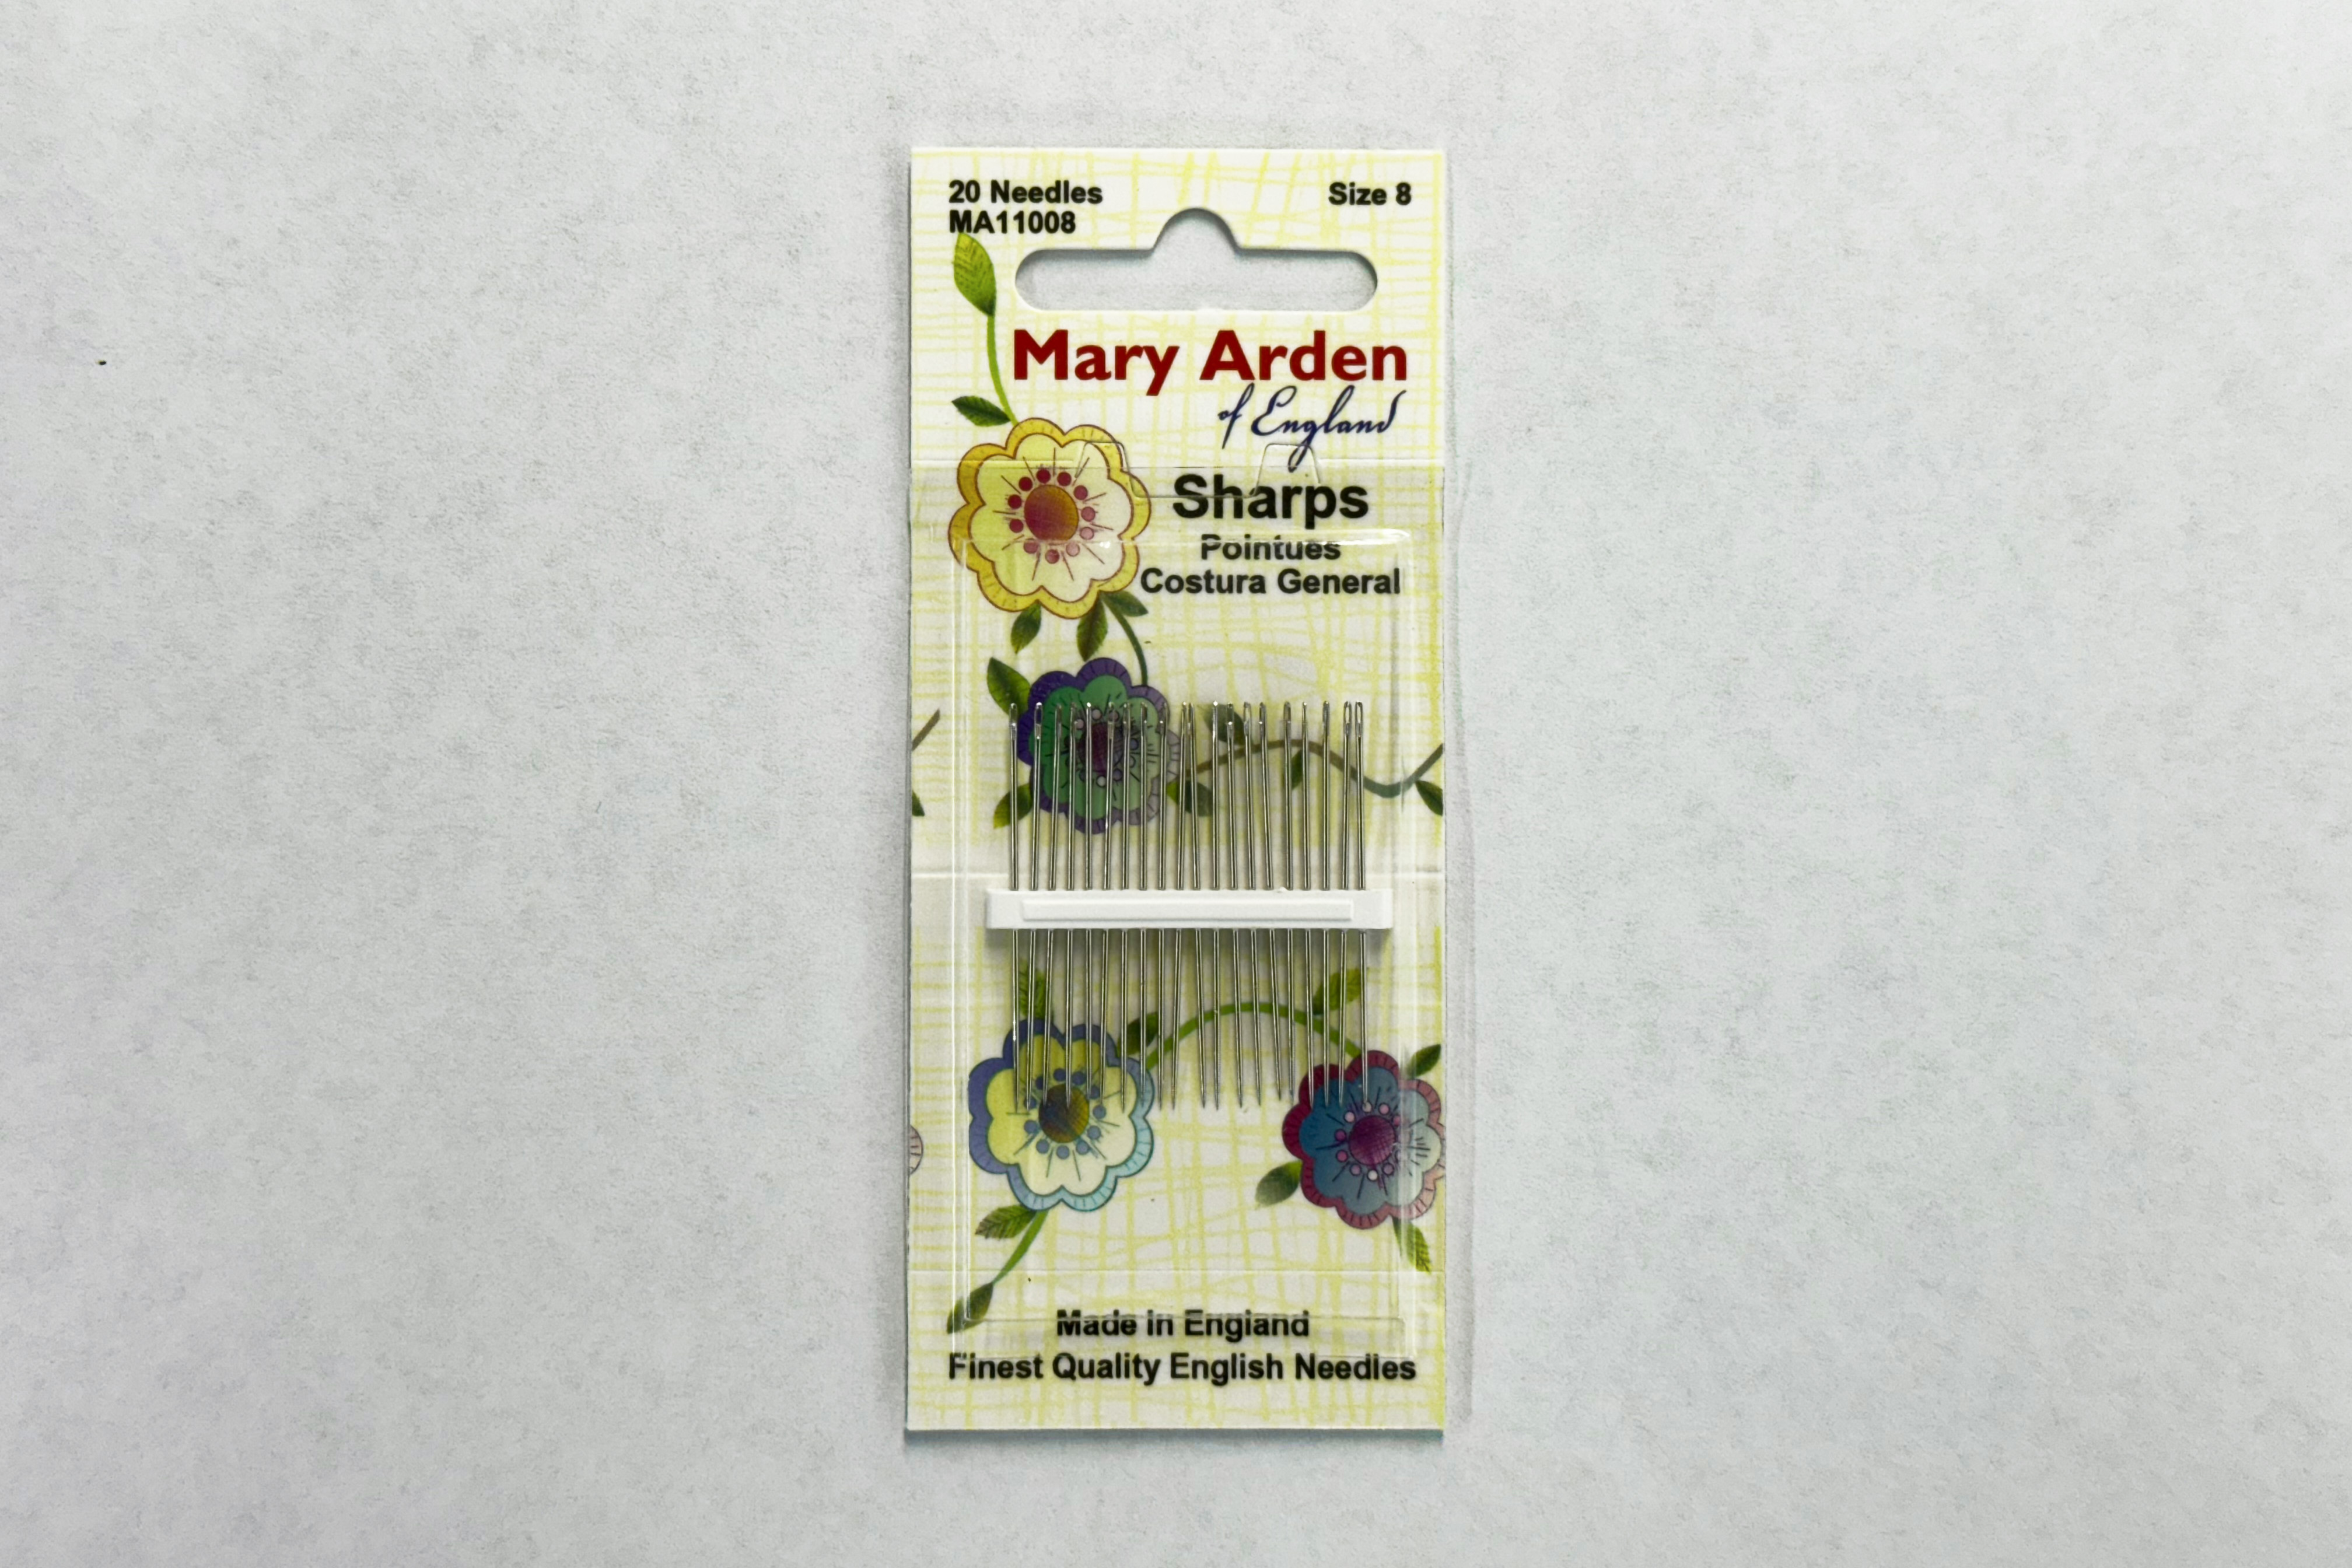 Mary Arden Needles - Sharps